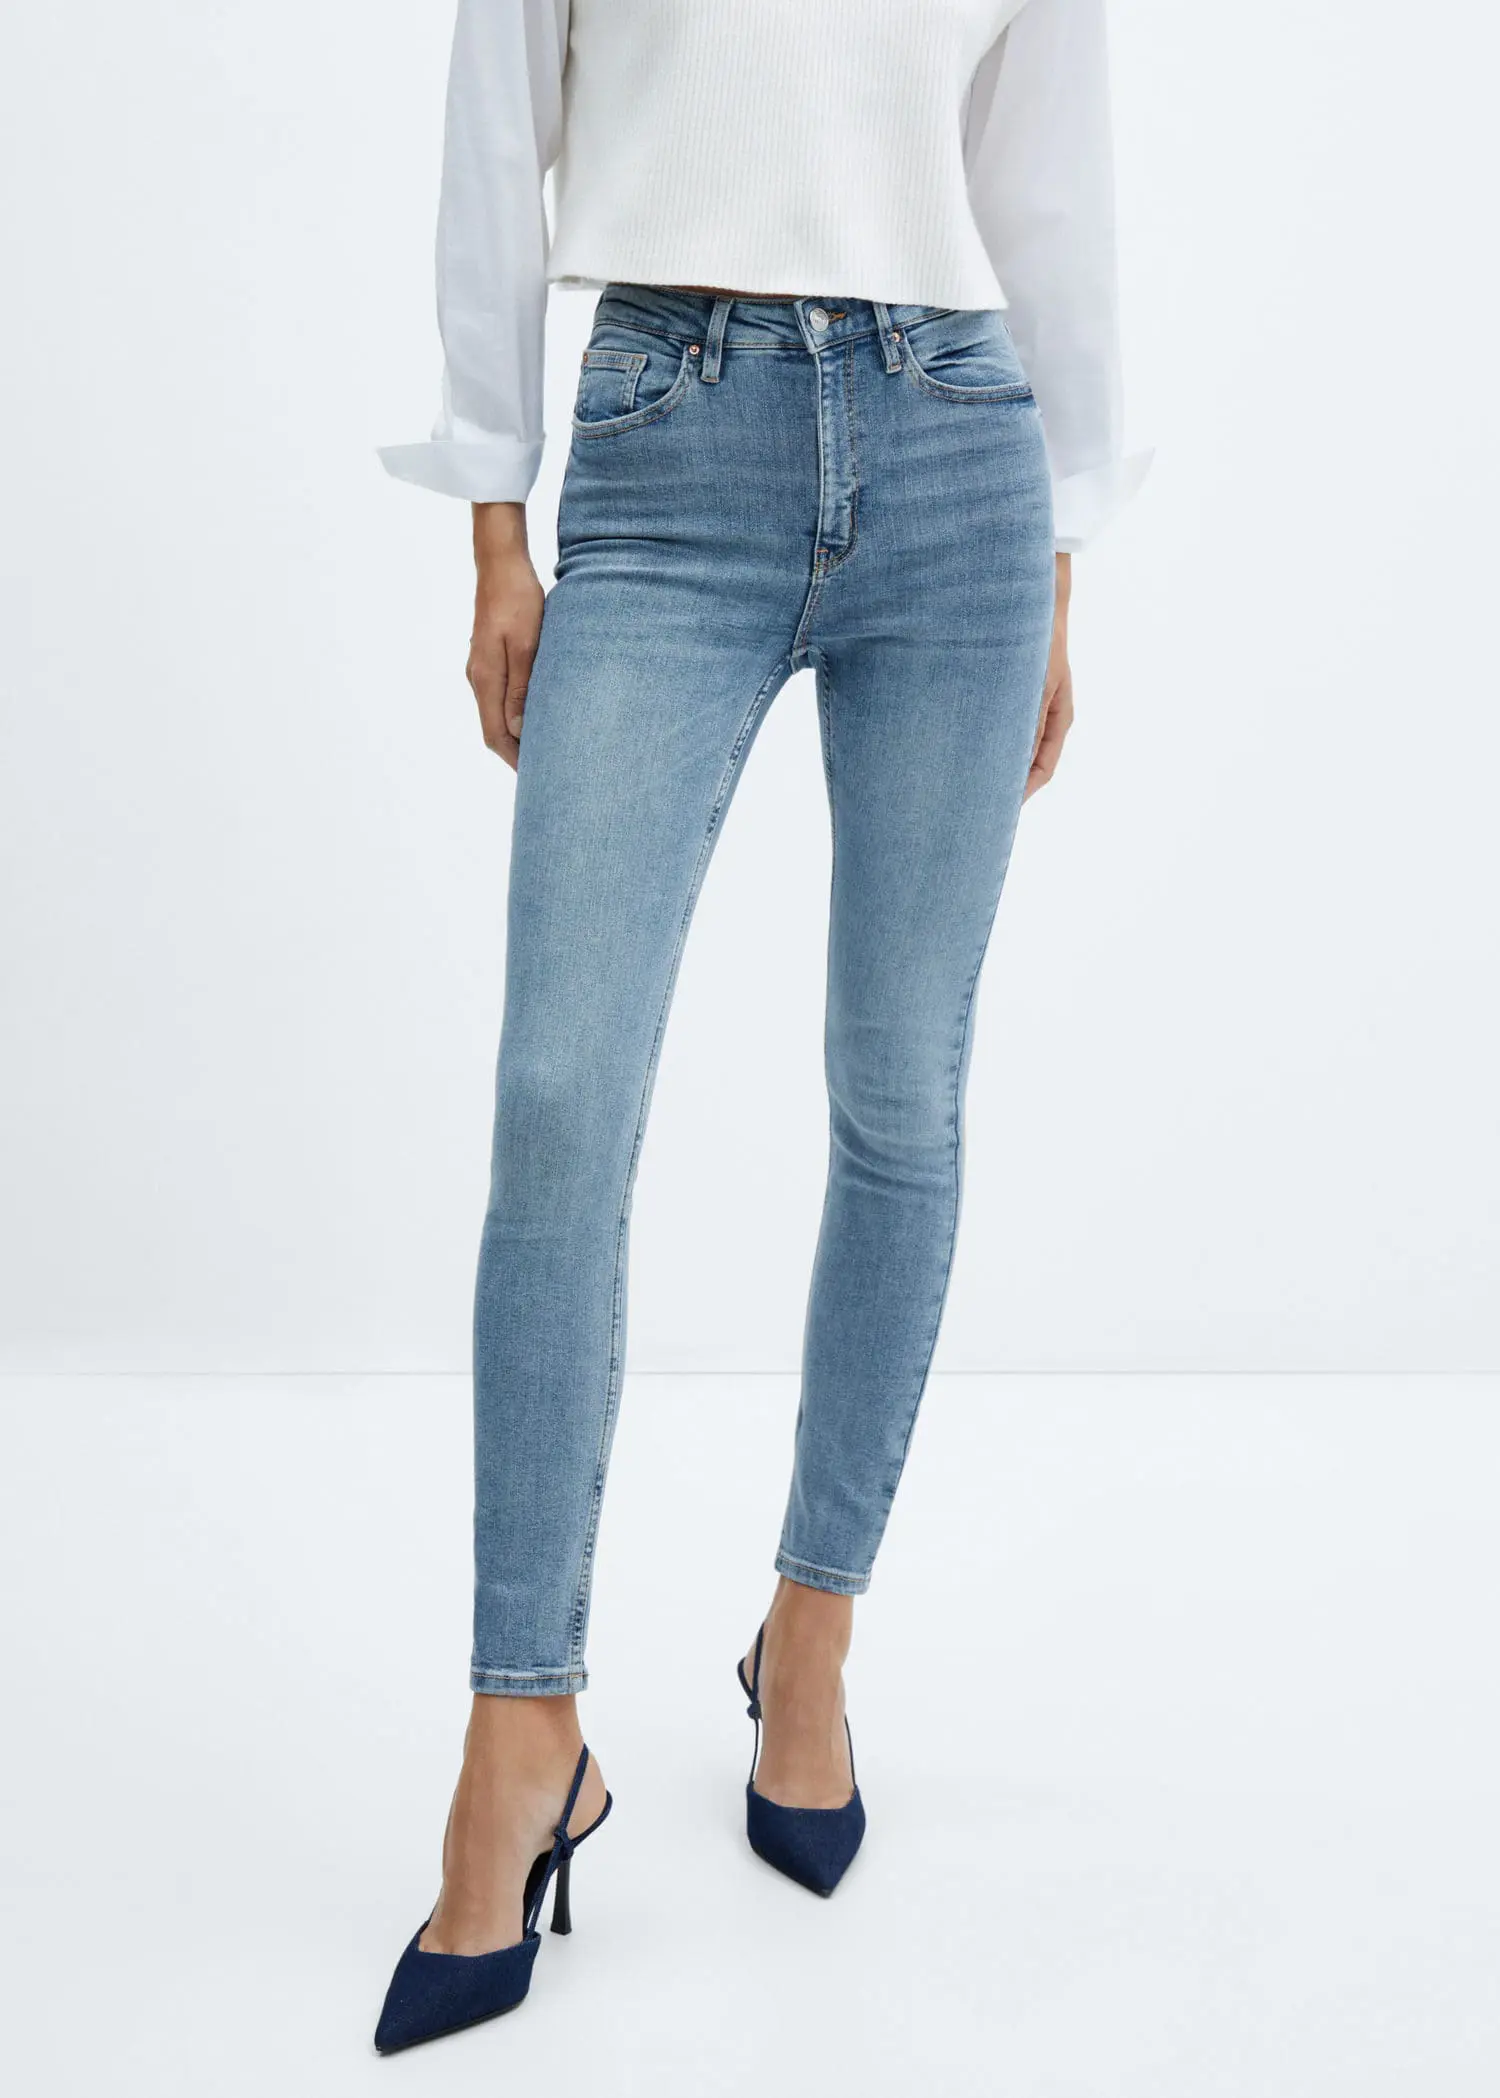 Mango High-rise skinny jeans. 2